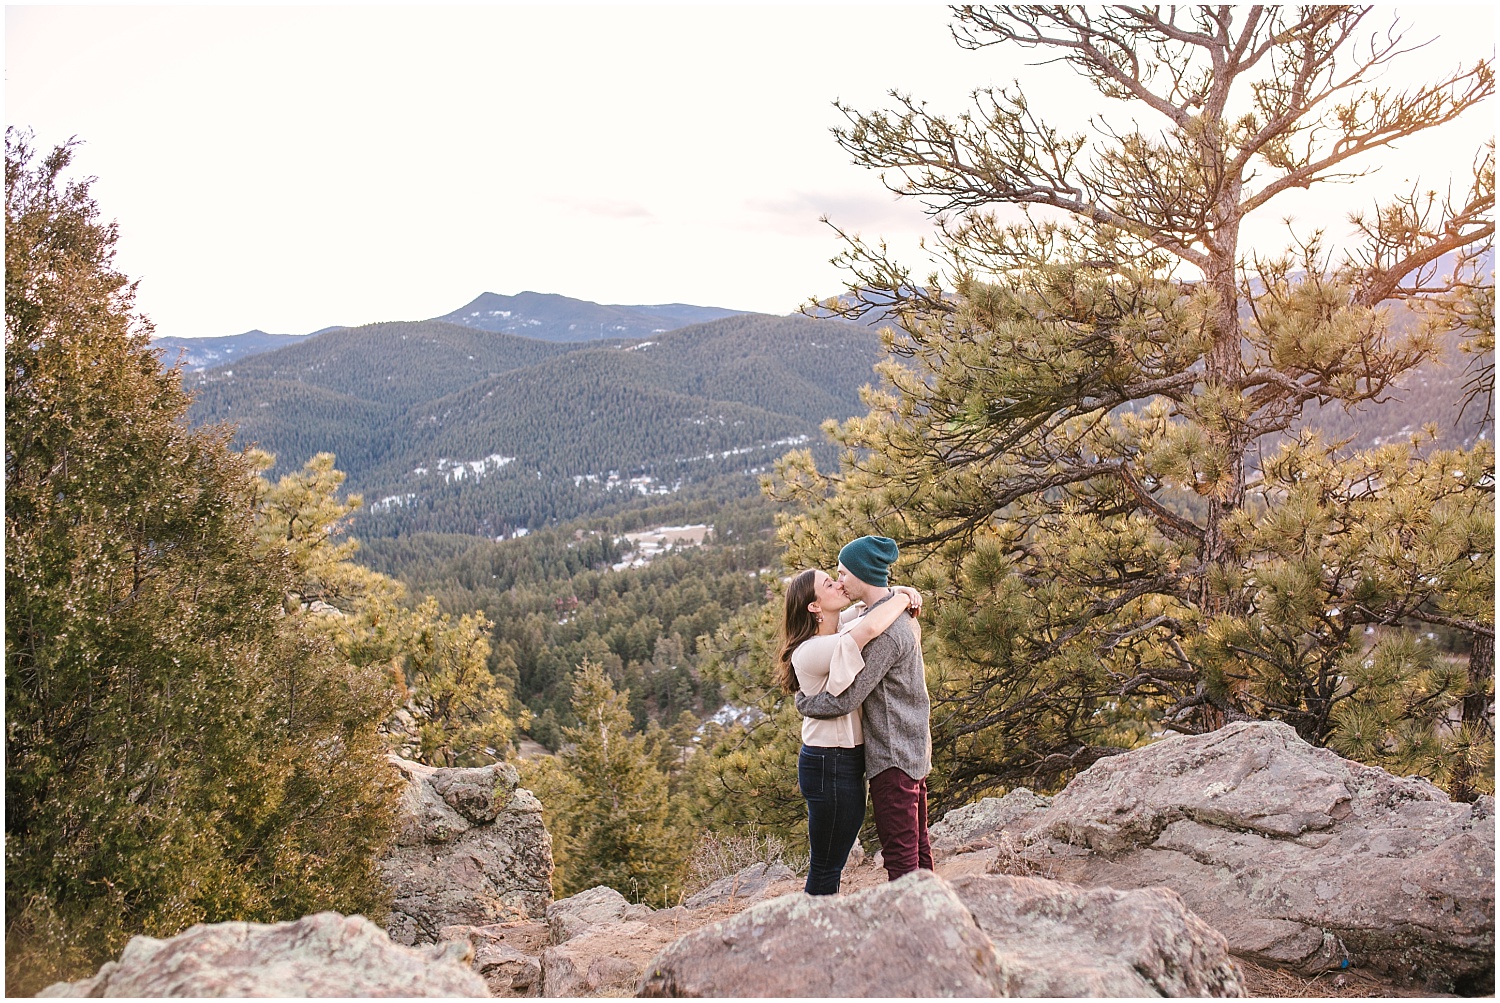 Mount Falcon engagement photos in Evergreen, Colorado